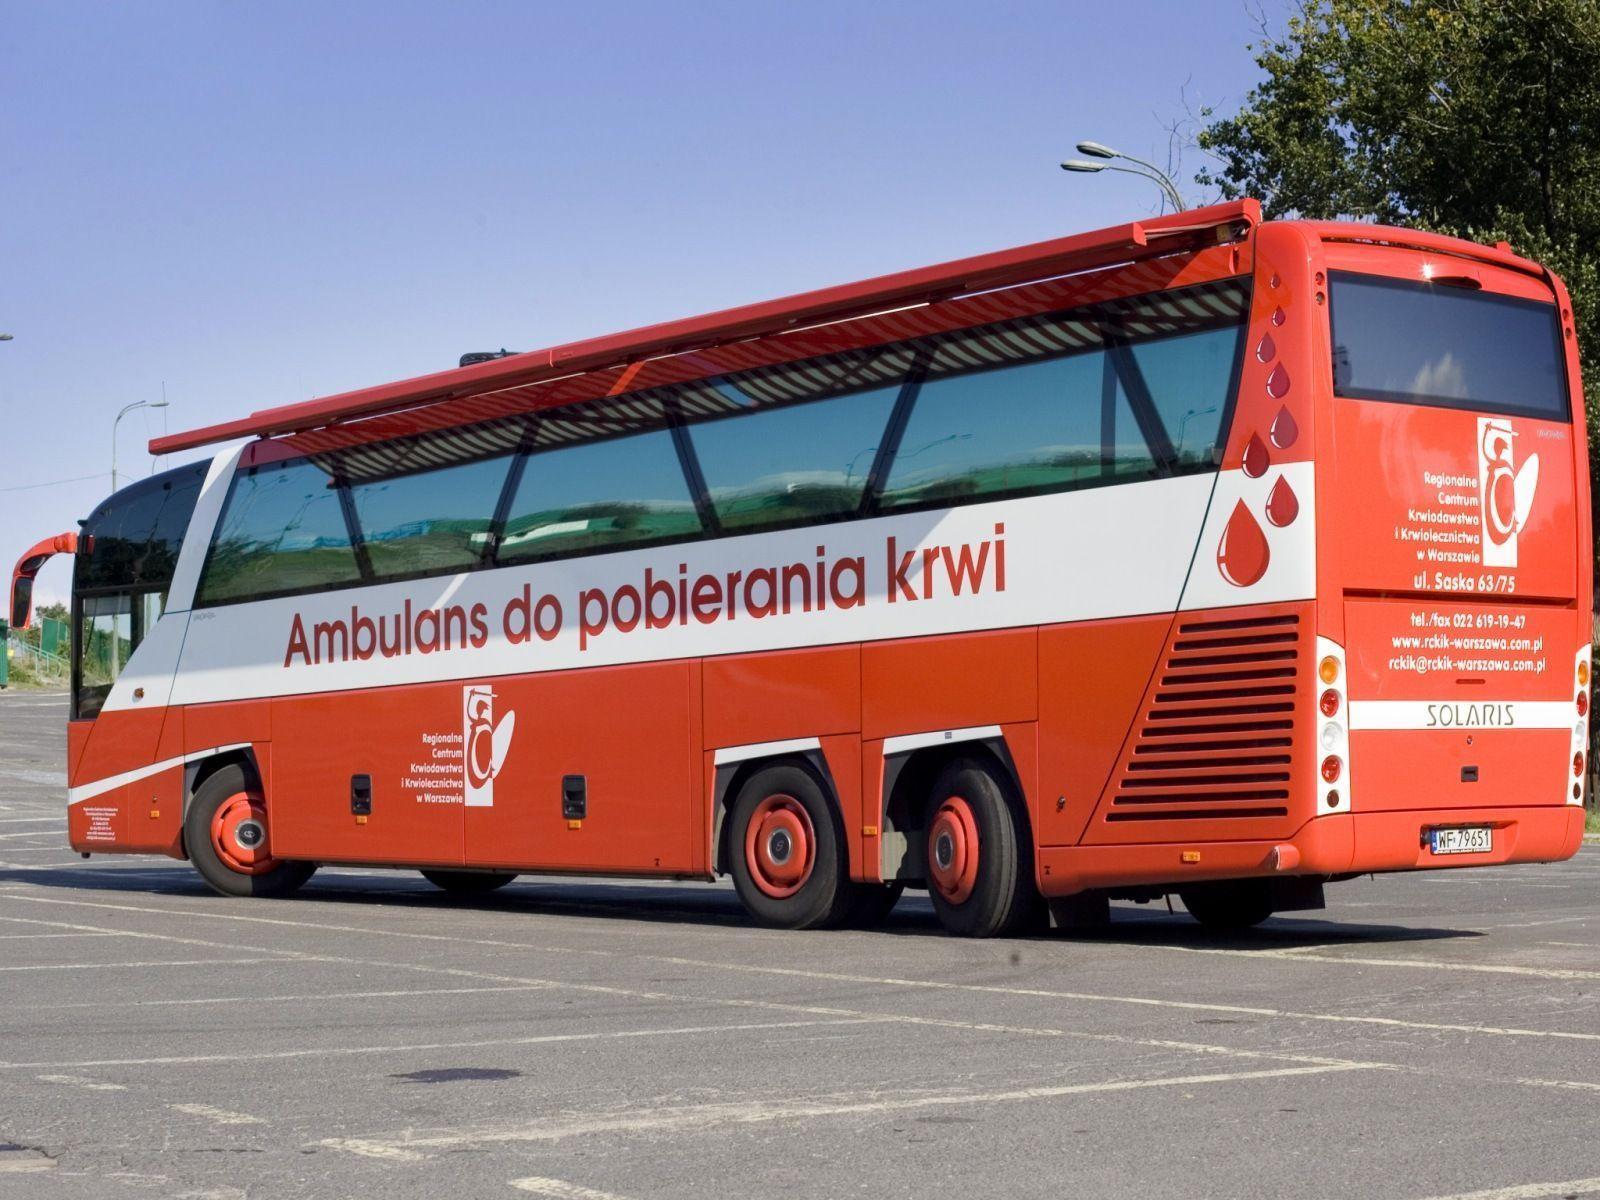 Solaris Vacanza 13 Ambulans do pobierania krwi bus emergency